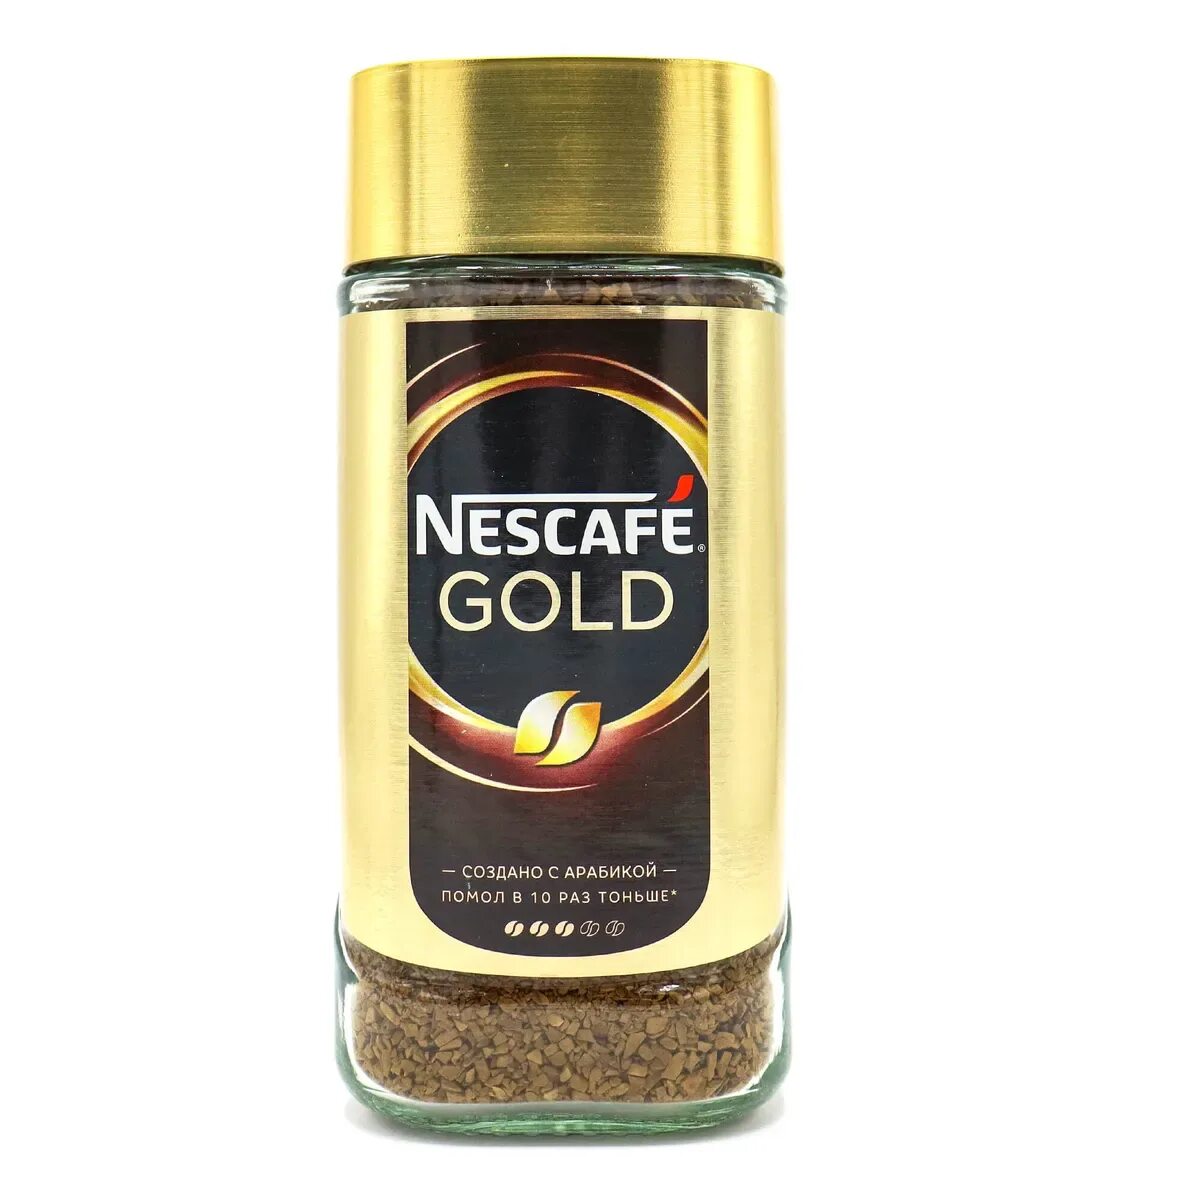 Nescafe Gold 190г. Кофе Нескафе Голд 190г. Кофе растворимый Nescafe Gold, 190г. Нескафе Голд 190 стекло. Кофе nescafe gold 190 г